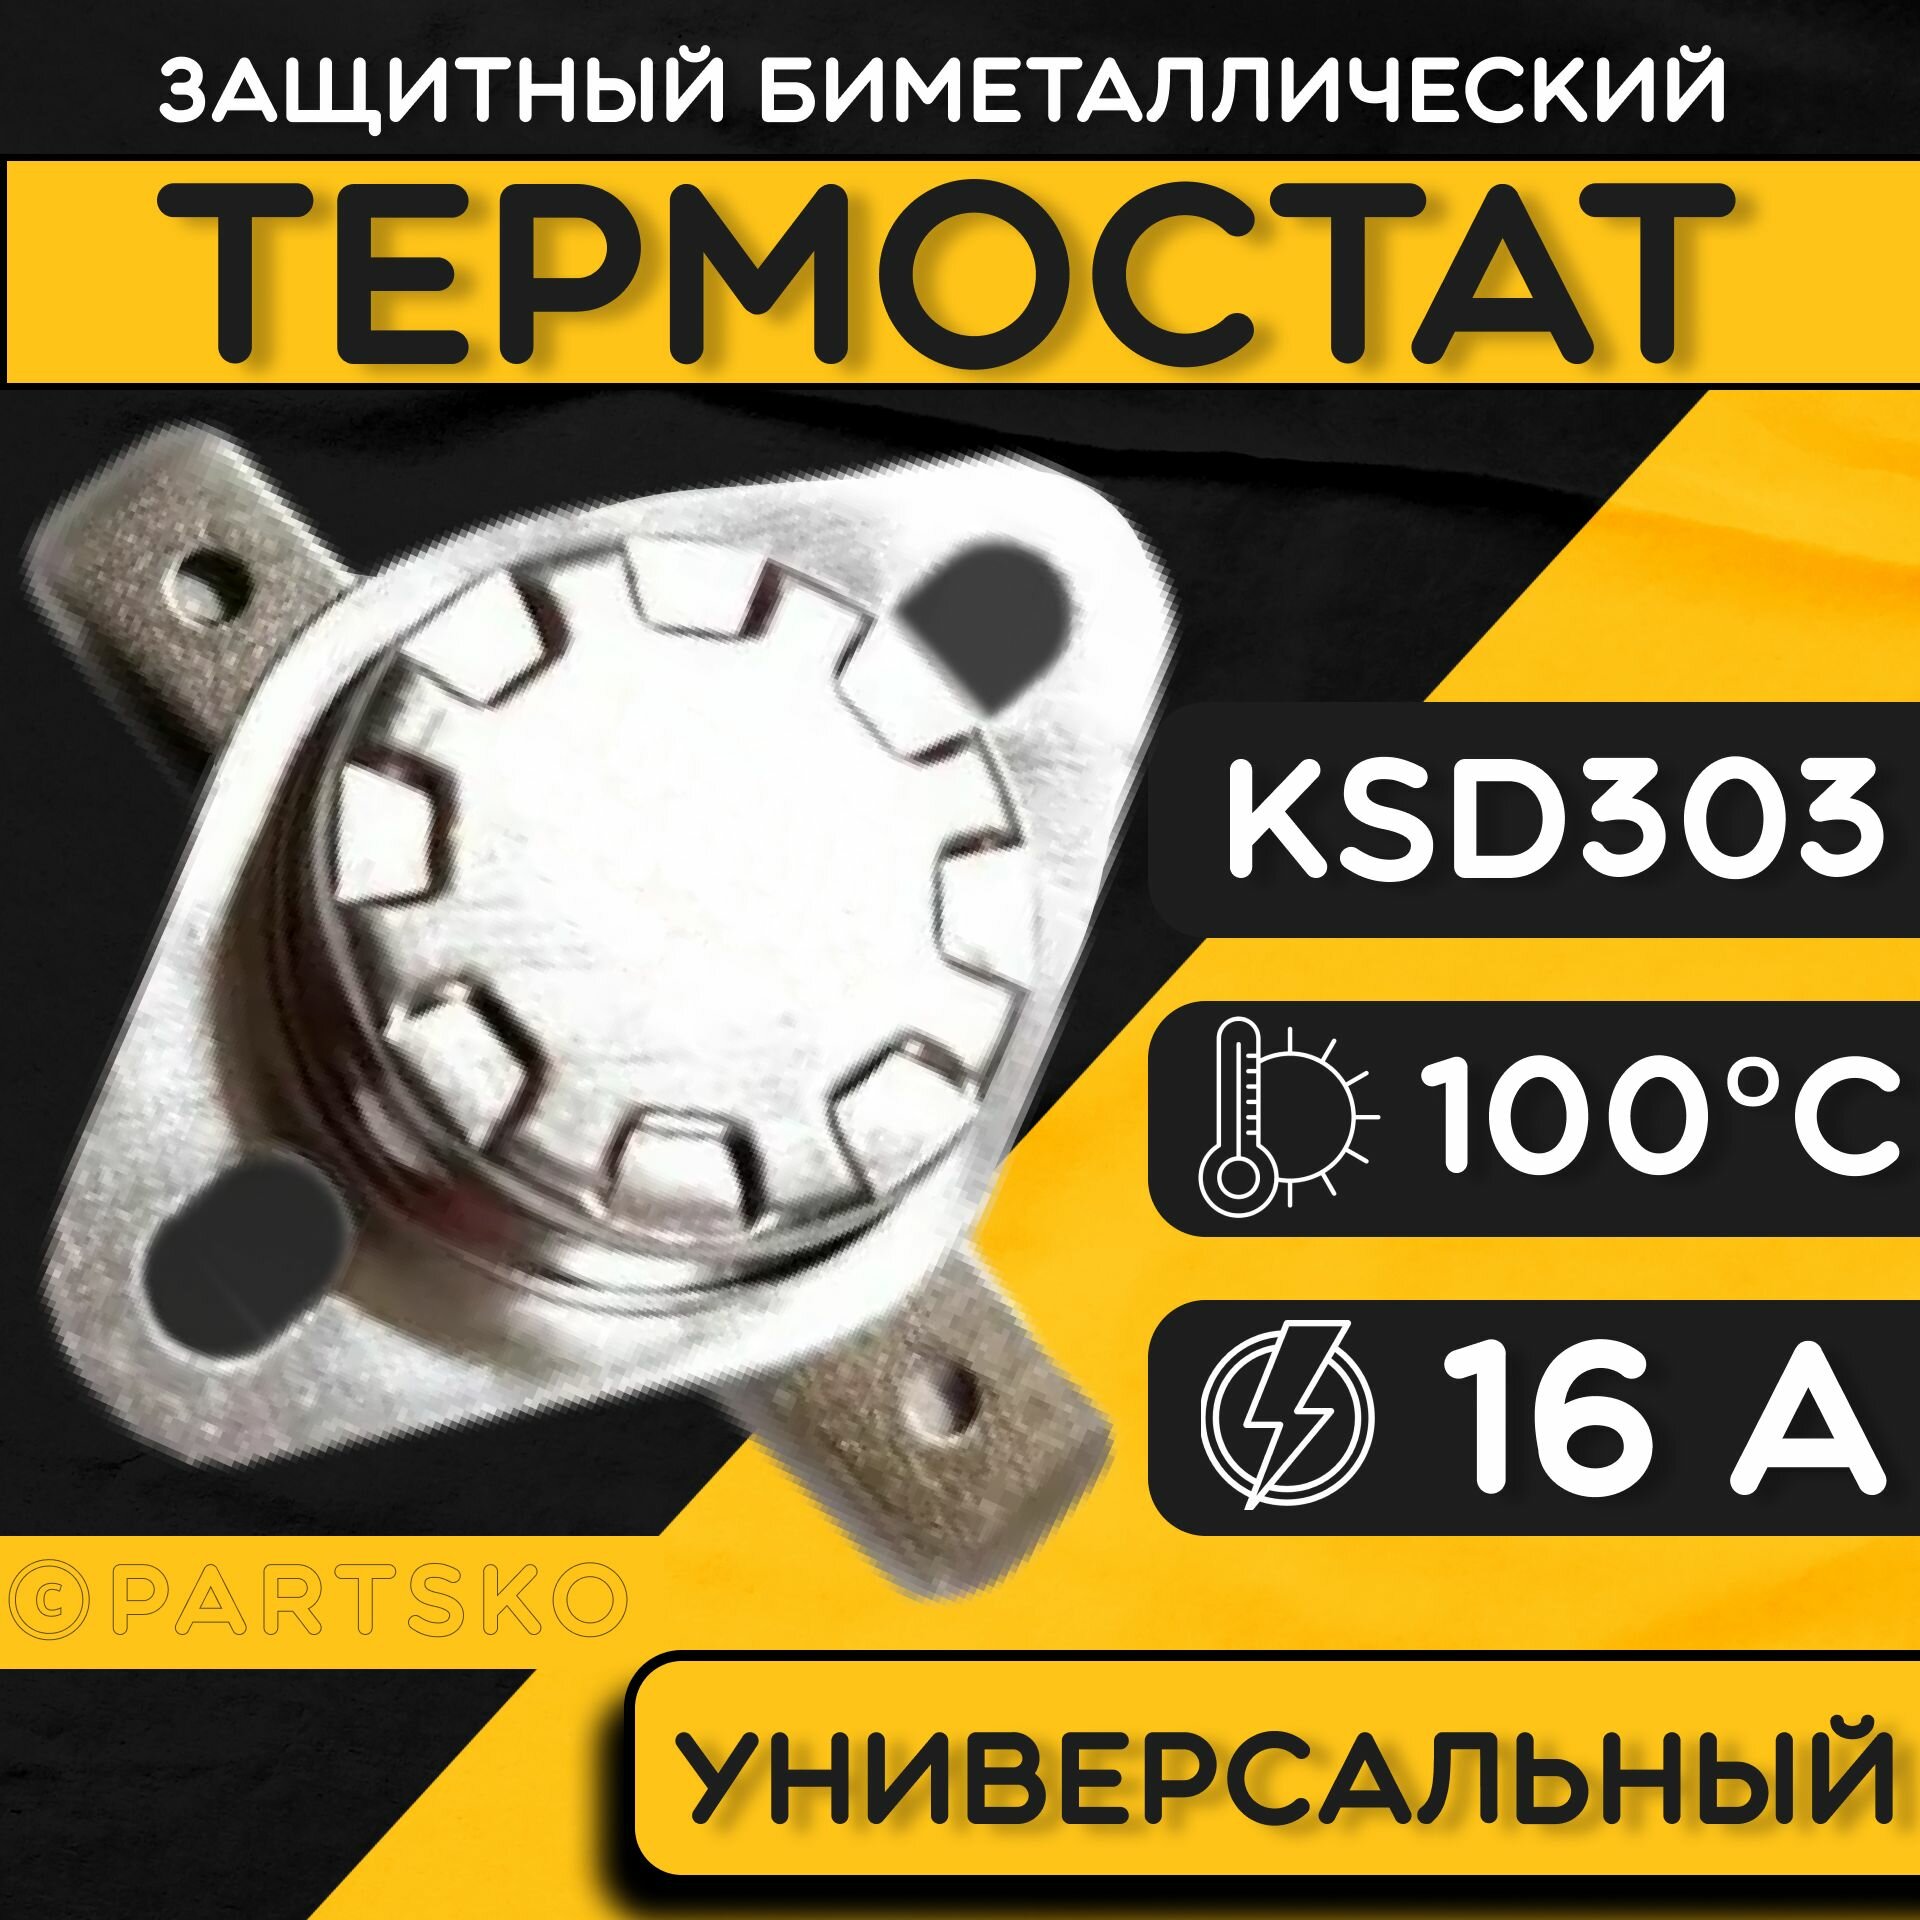 Термостат для водонагревателя биметаллический KSD302, 16A, до 100 градусов. Термодатчик / регулятор температуры универсальный, самовозвратный.